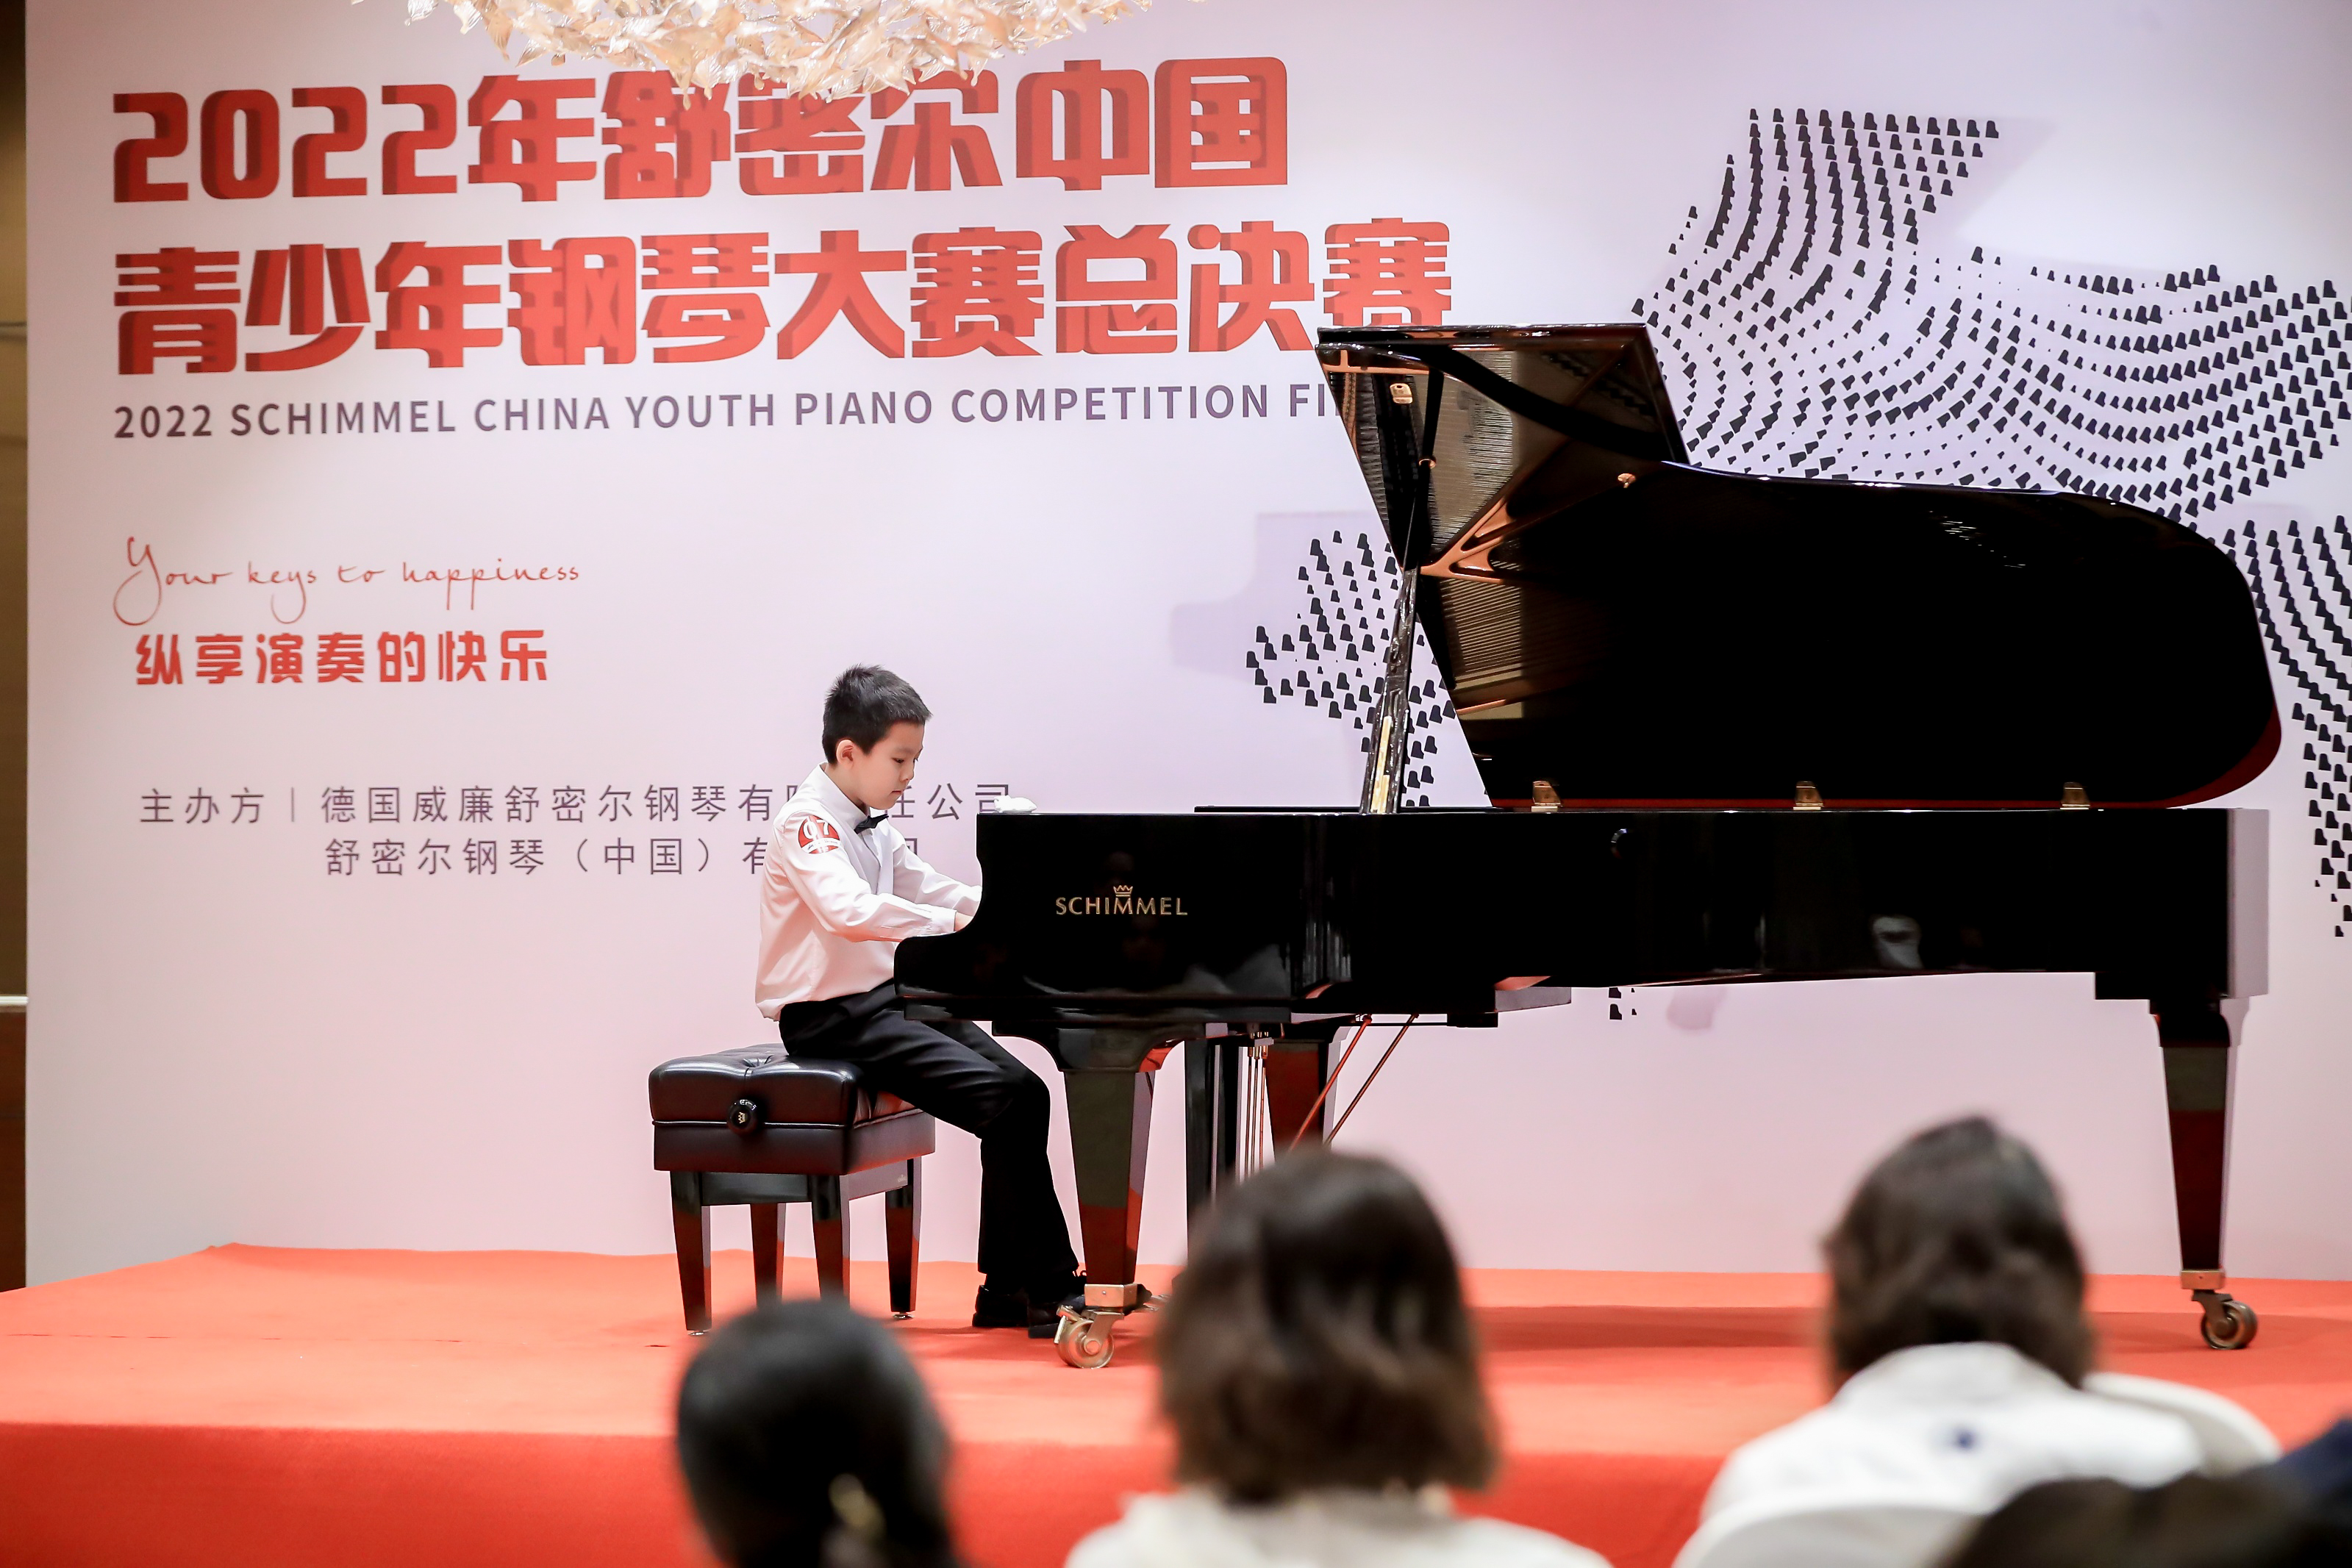 【获奖名单】2022年舒密尔中国青少年钢琴大赛总决赛业余组、高校组